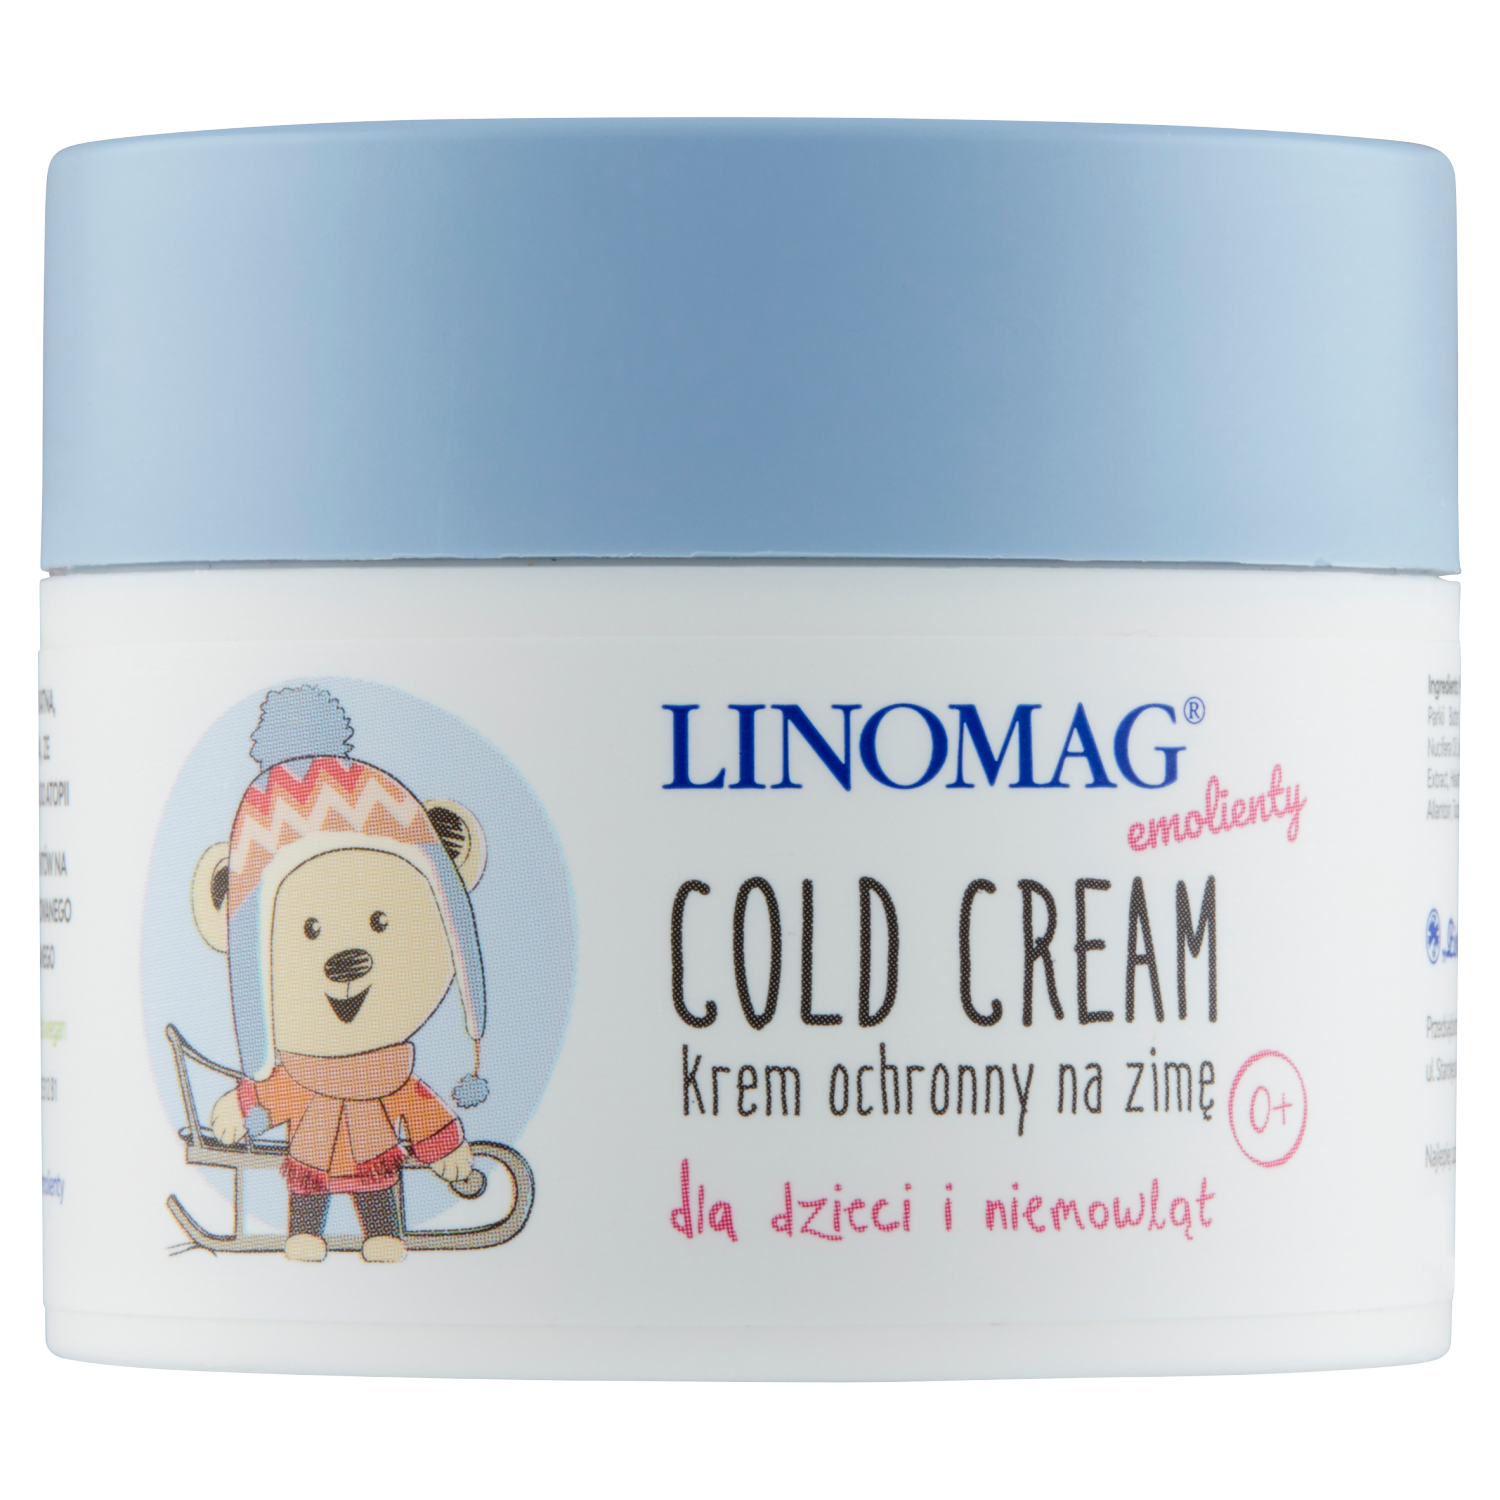 Linomag Emolienty Cold Cream зимний защитный крем для детей, 50 мл